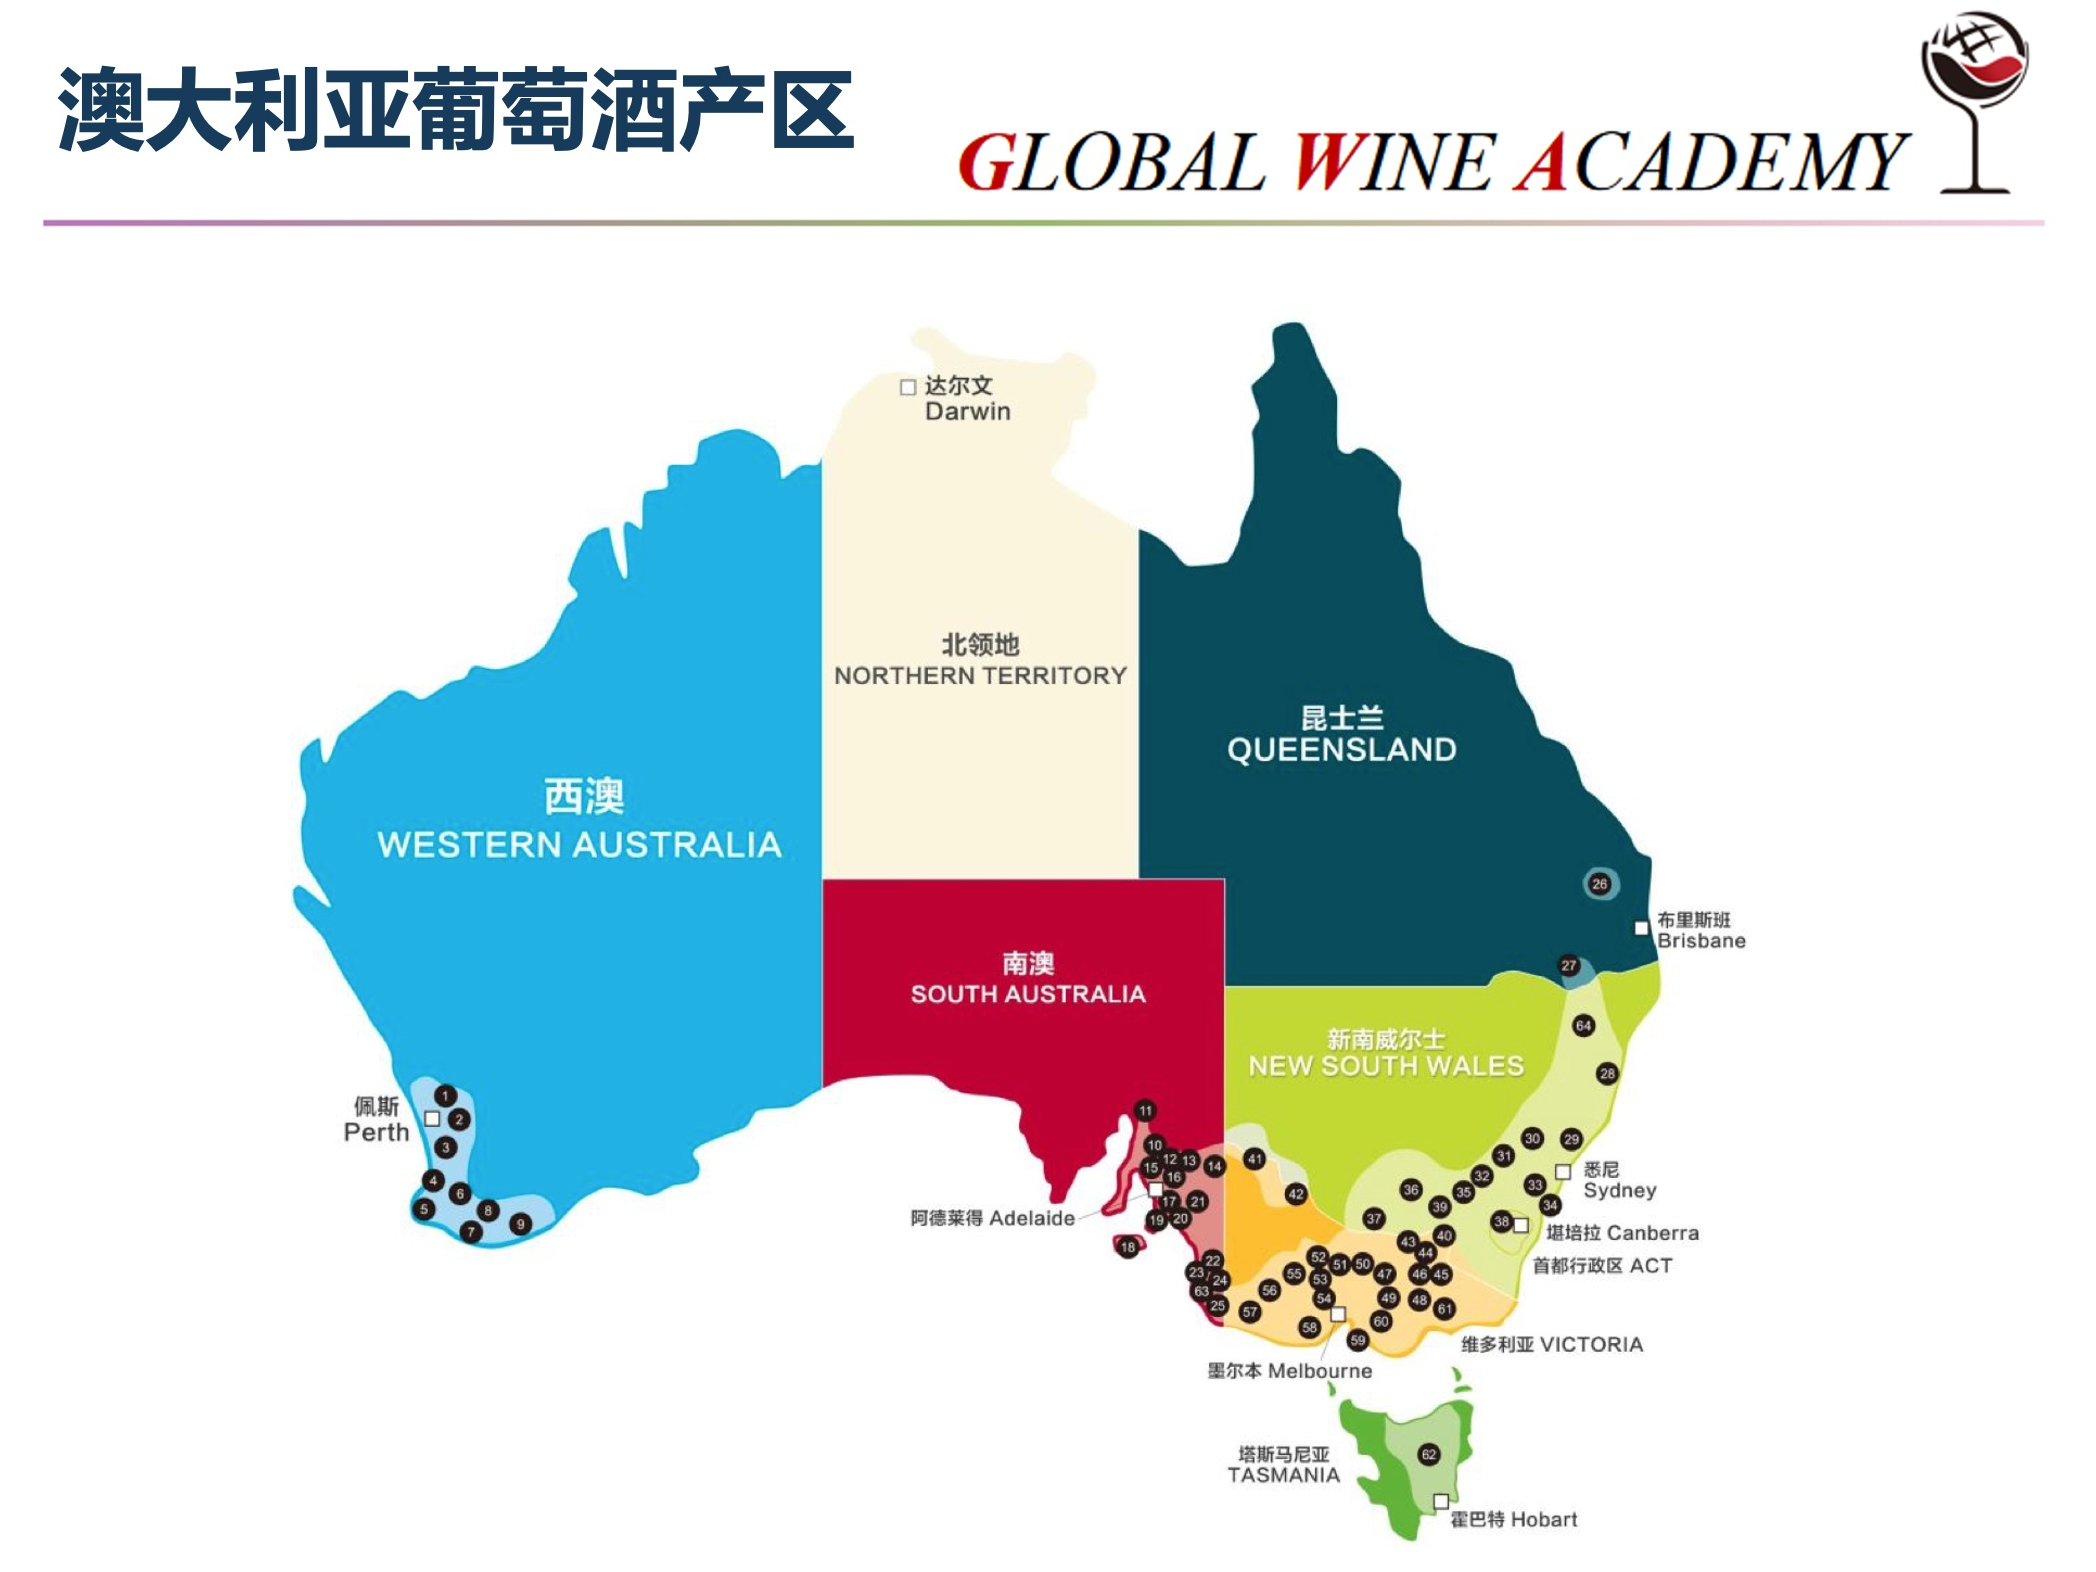 葡萄酒品酒师证书WSET品酒师认证杭州品酒师培训课程3.jpg